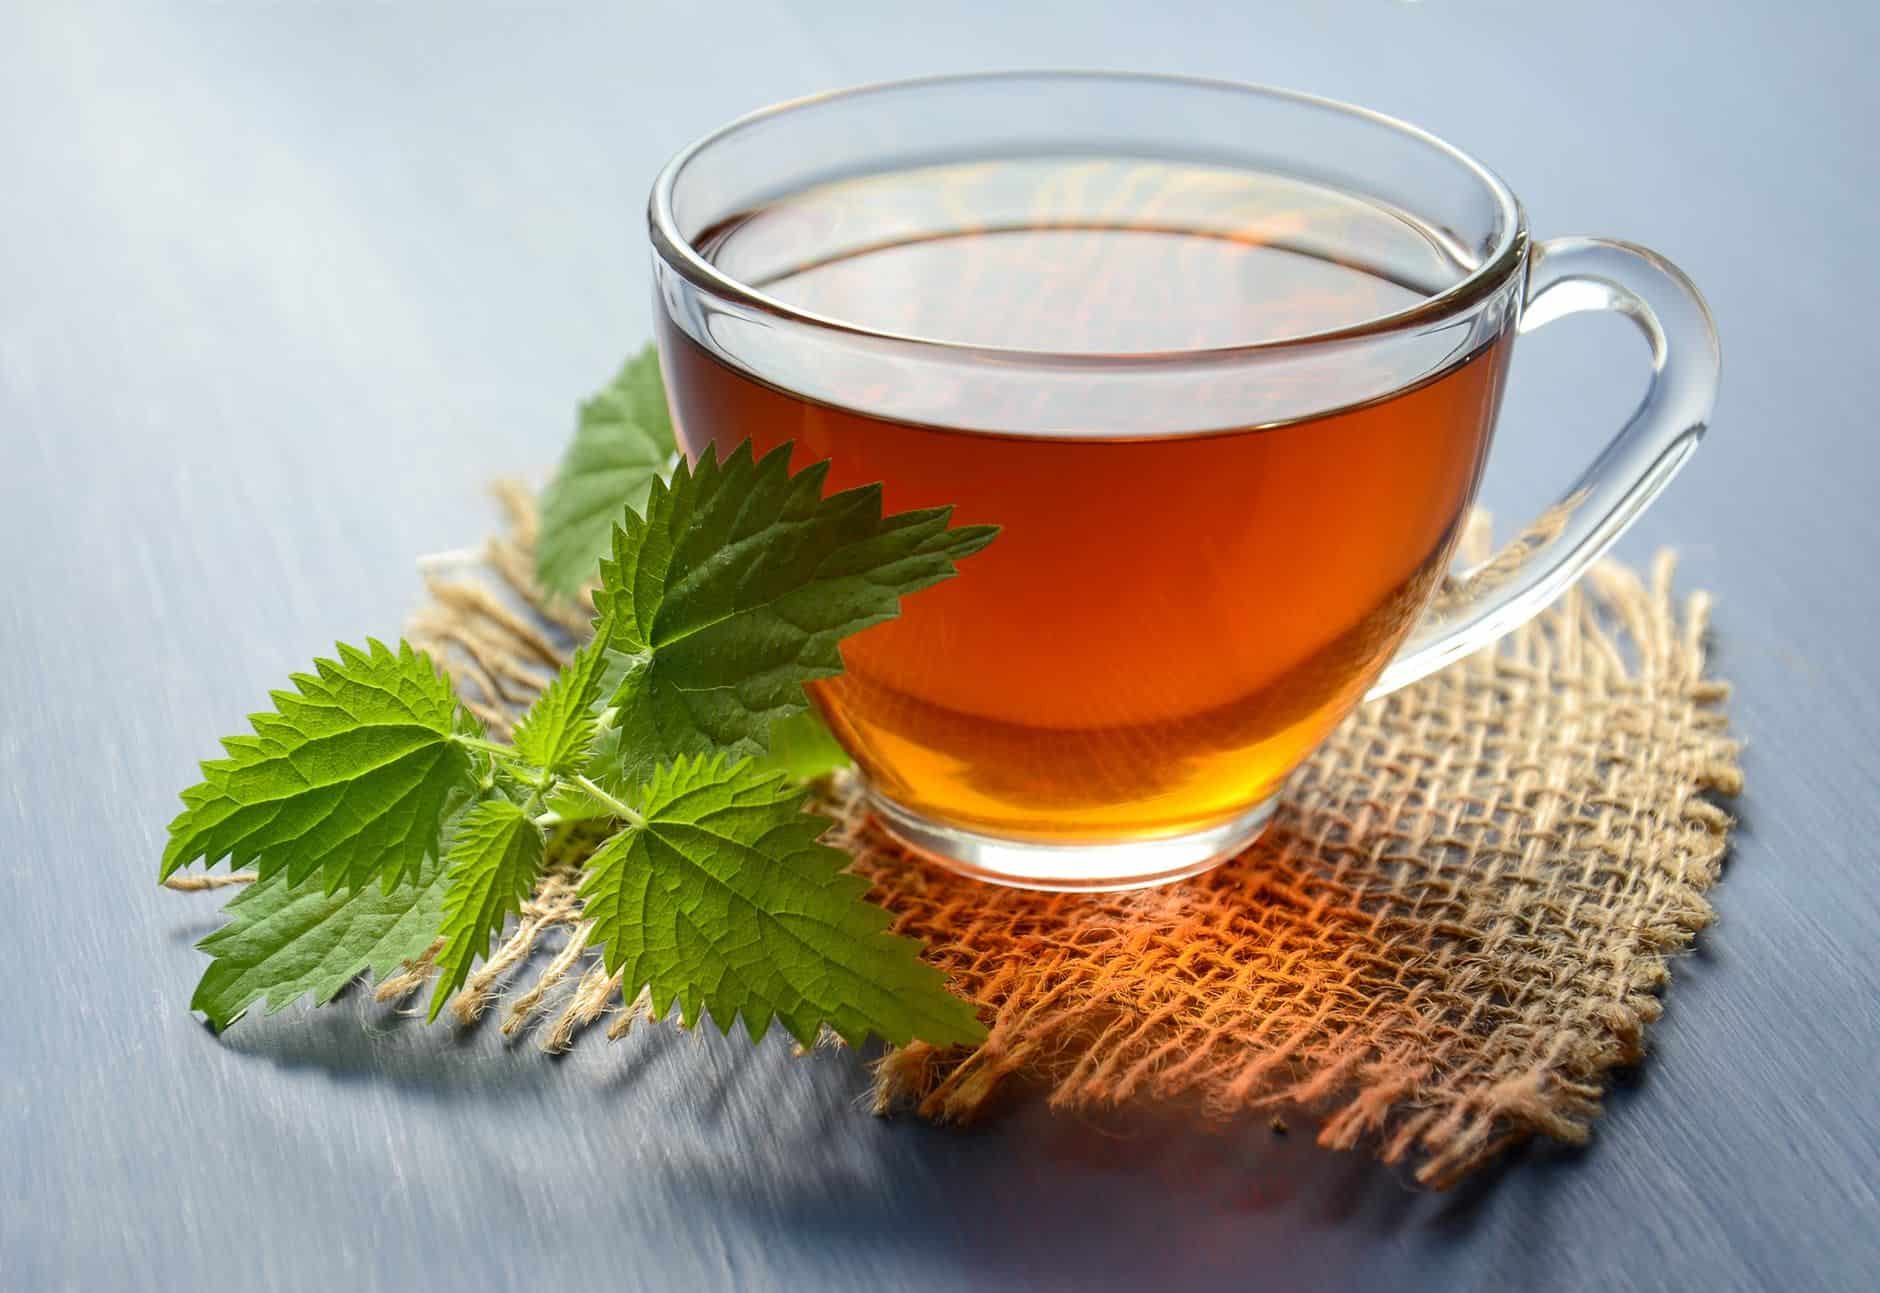 התה גם יסייע לאזן את חילוף החומרים בגוף שלכם ויתרום לתחושת הרוגע והשלווה